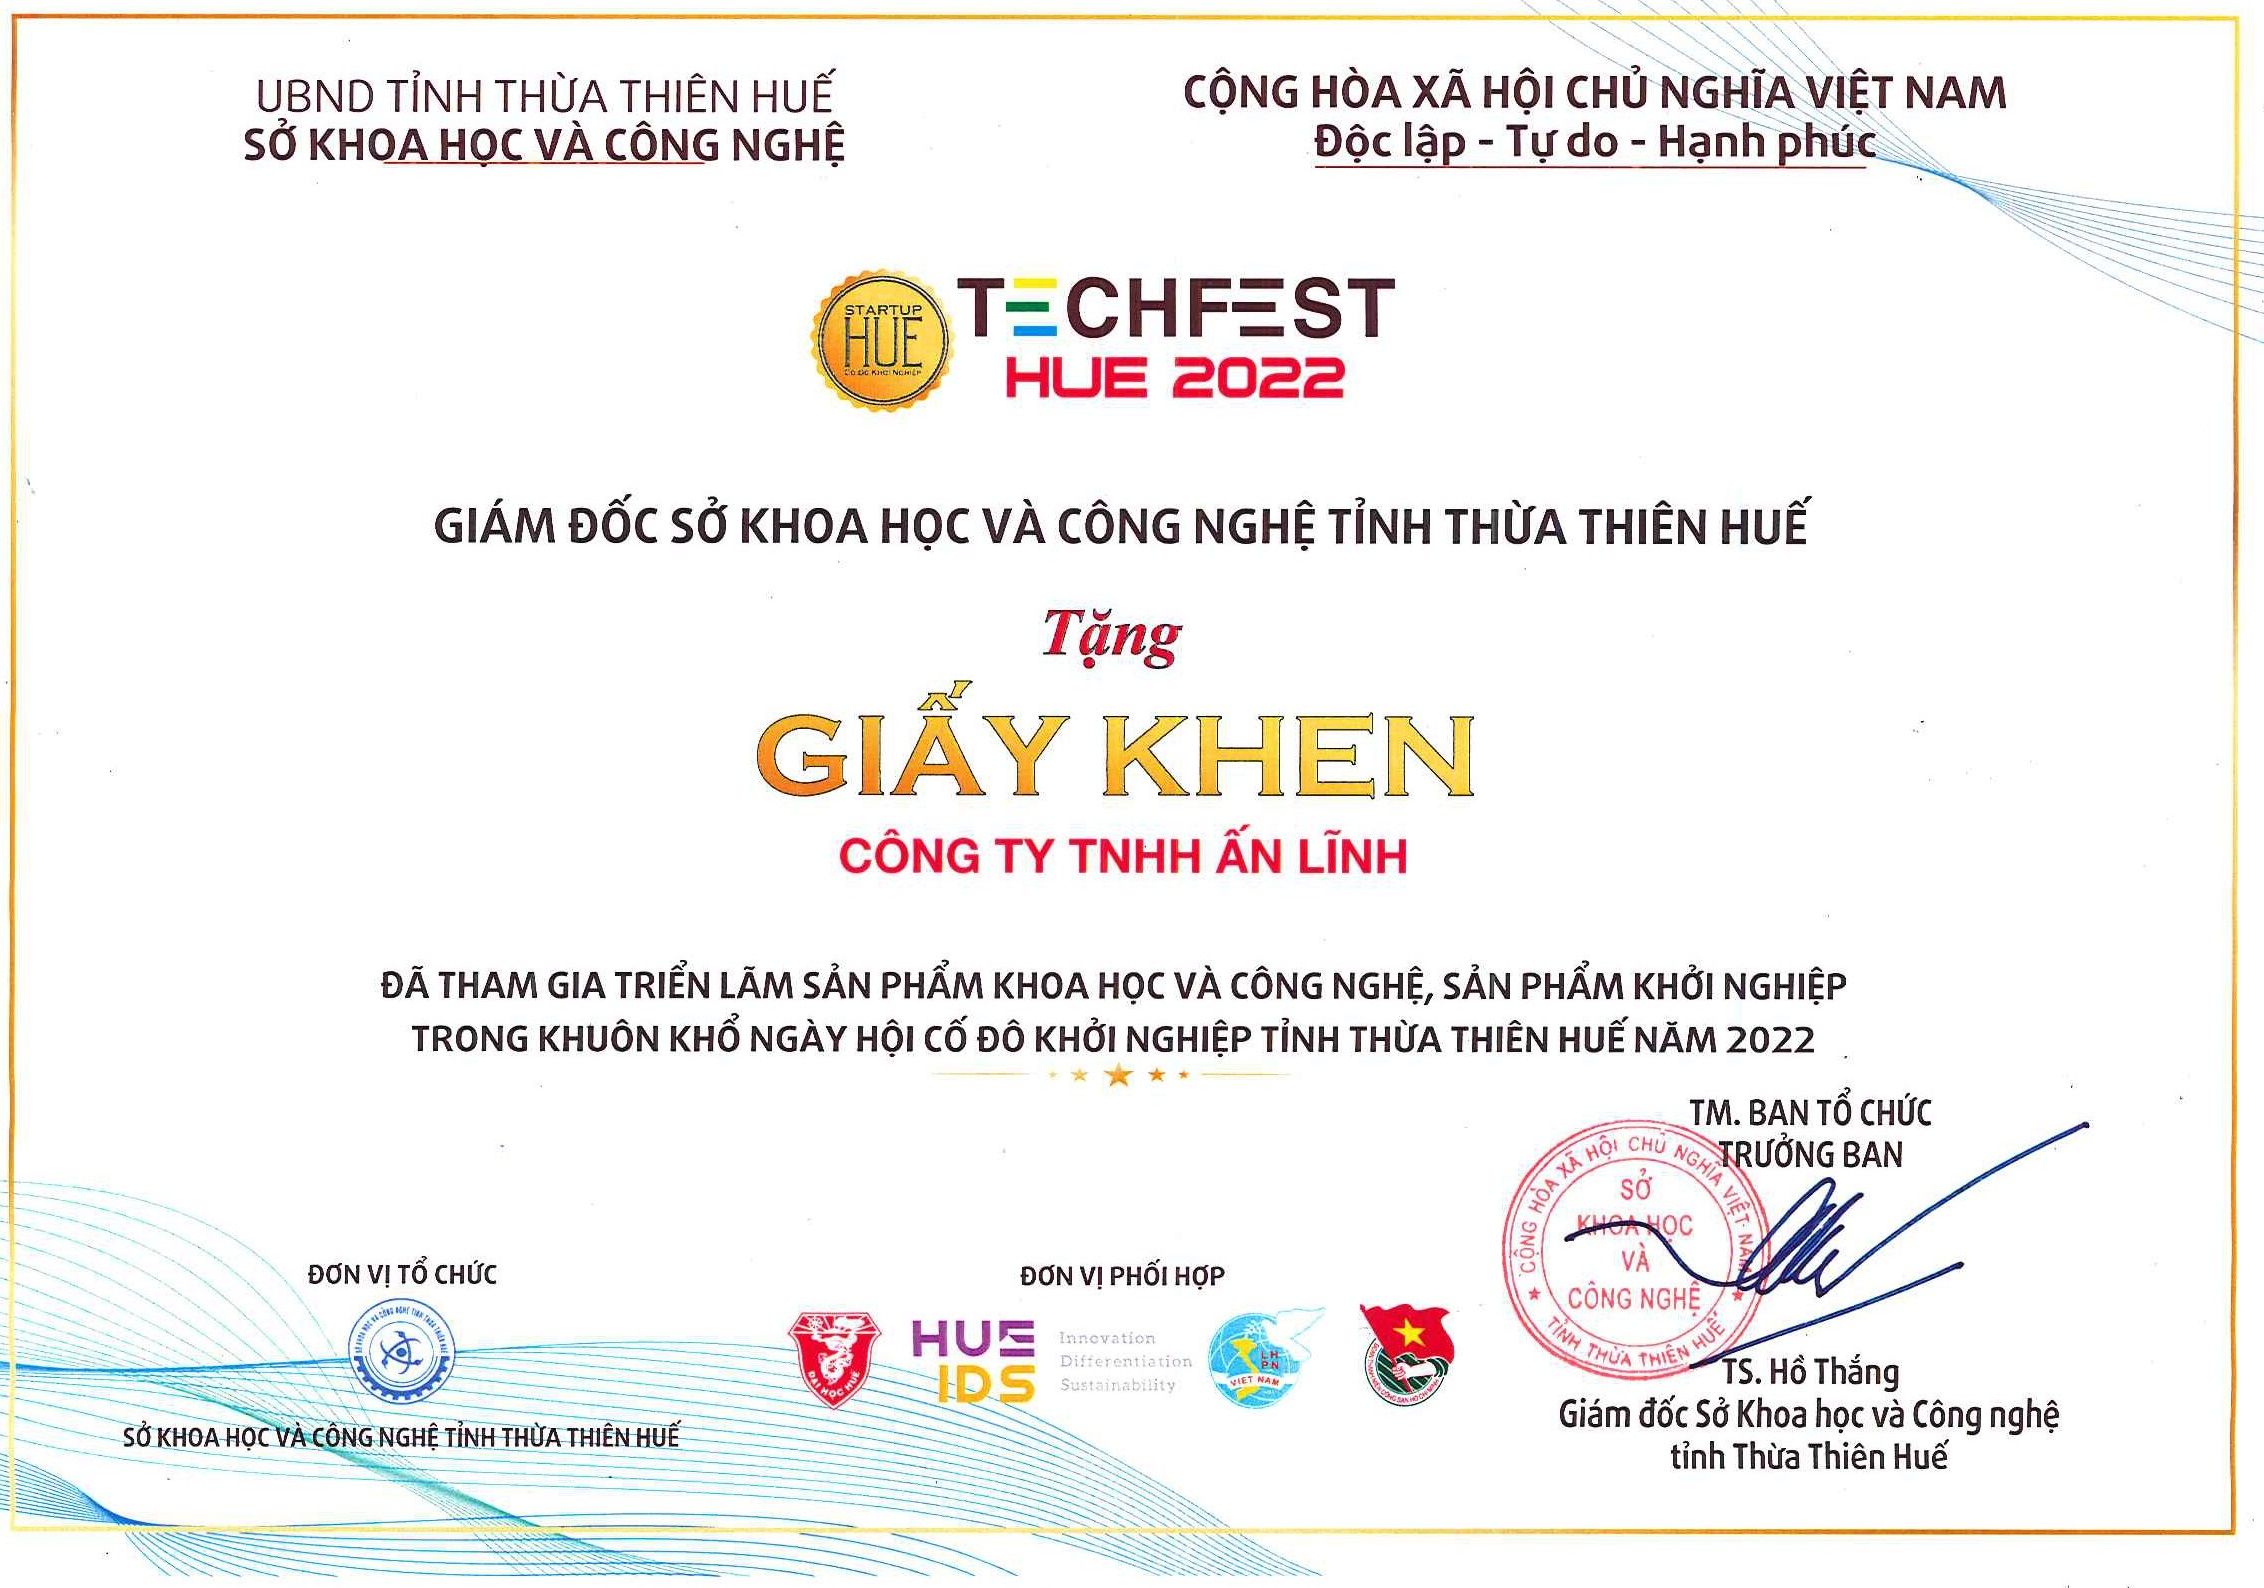 Giấy khen tham gia ngày hội Cố Đô Khởi Nghiệp Năm 2022 Bancha Tea Hue